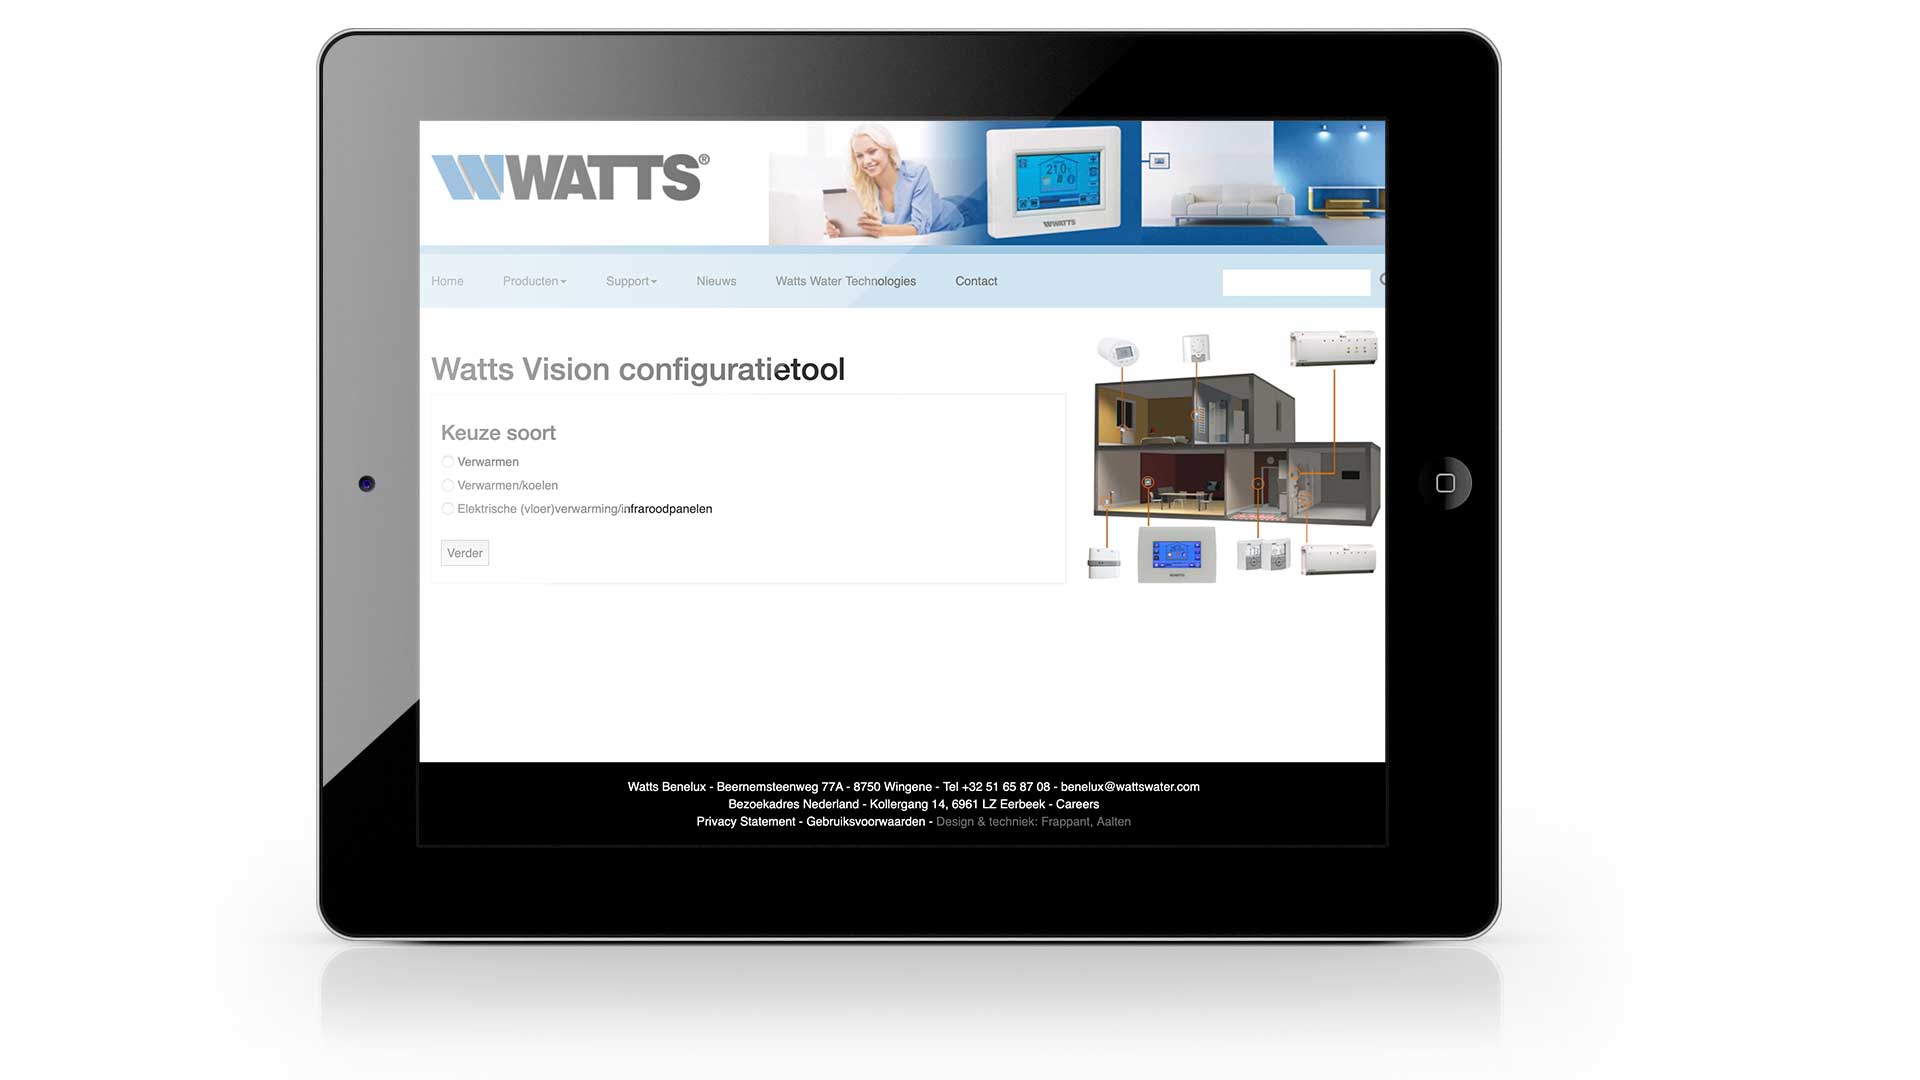 Watts Vision configuratietool